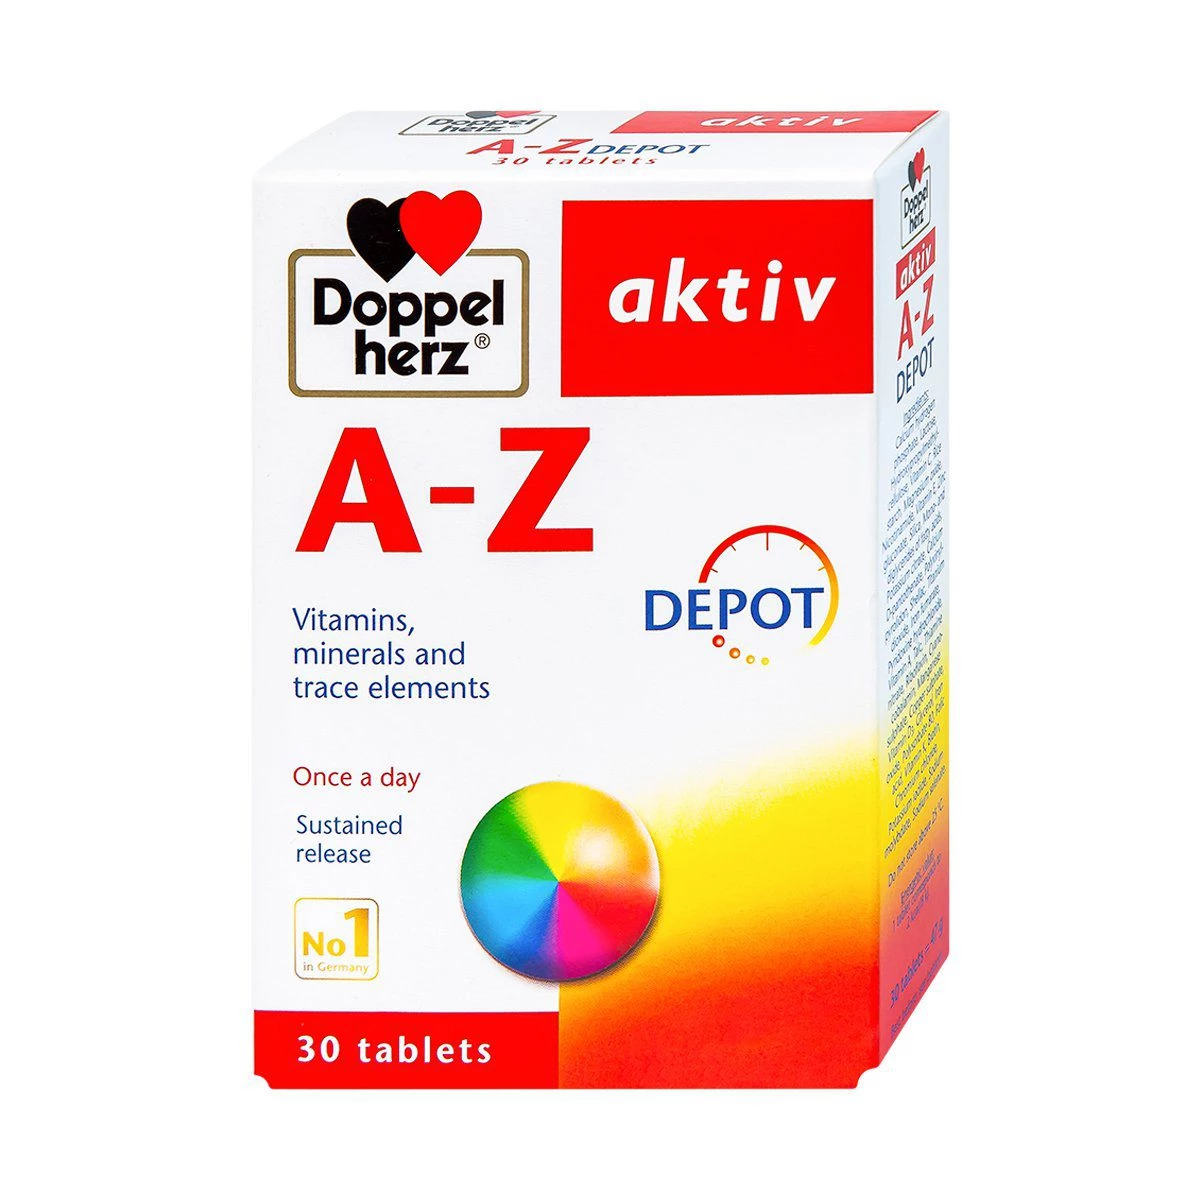 A-Z Depot Doppelherz - Bổ sung vitamin & khoáng chất thiết yếu cho cơ thể